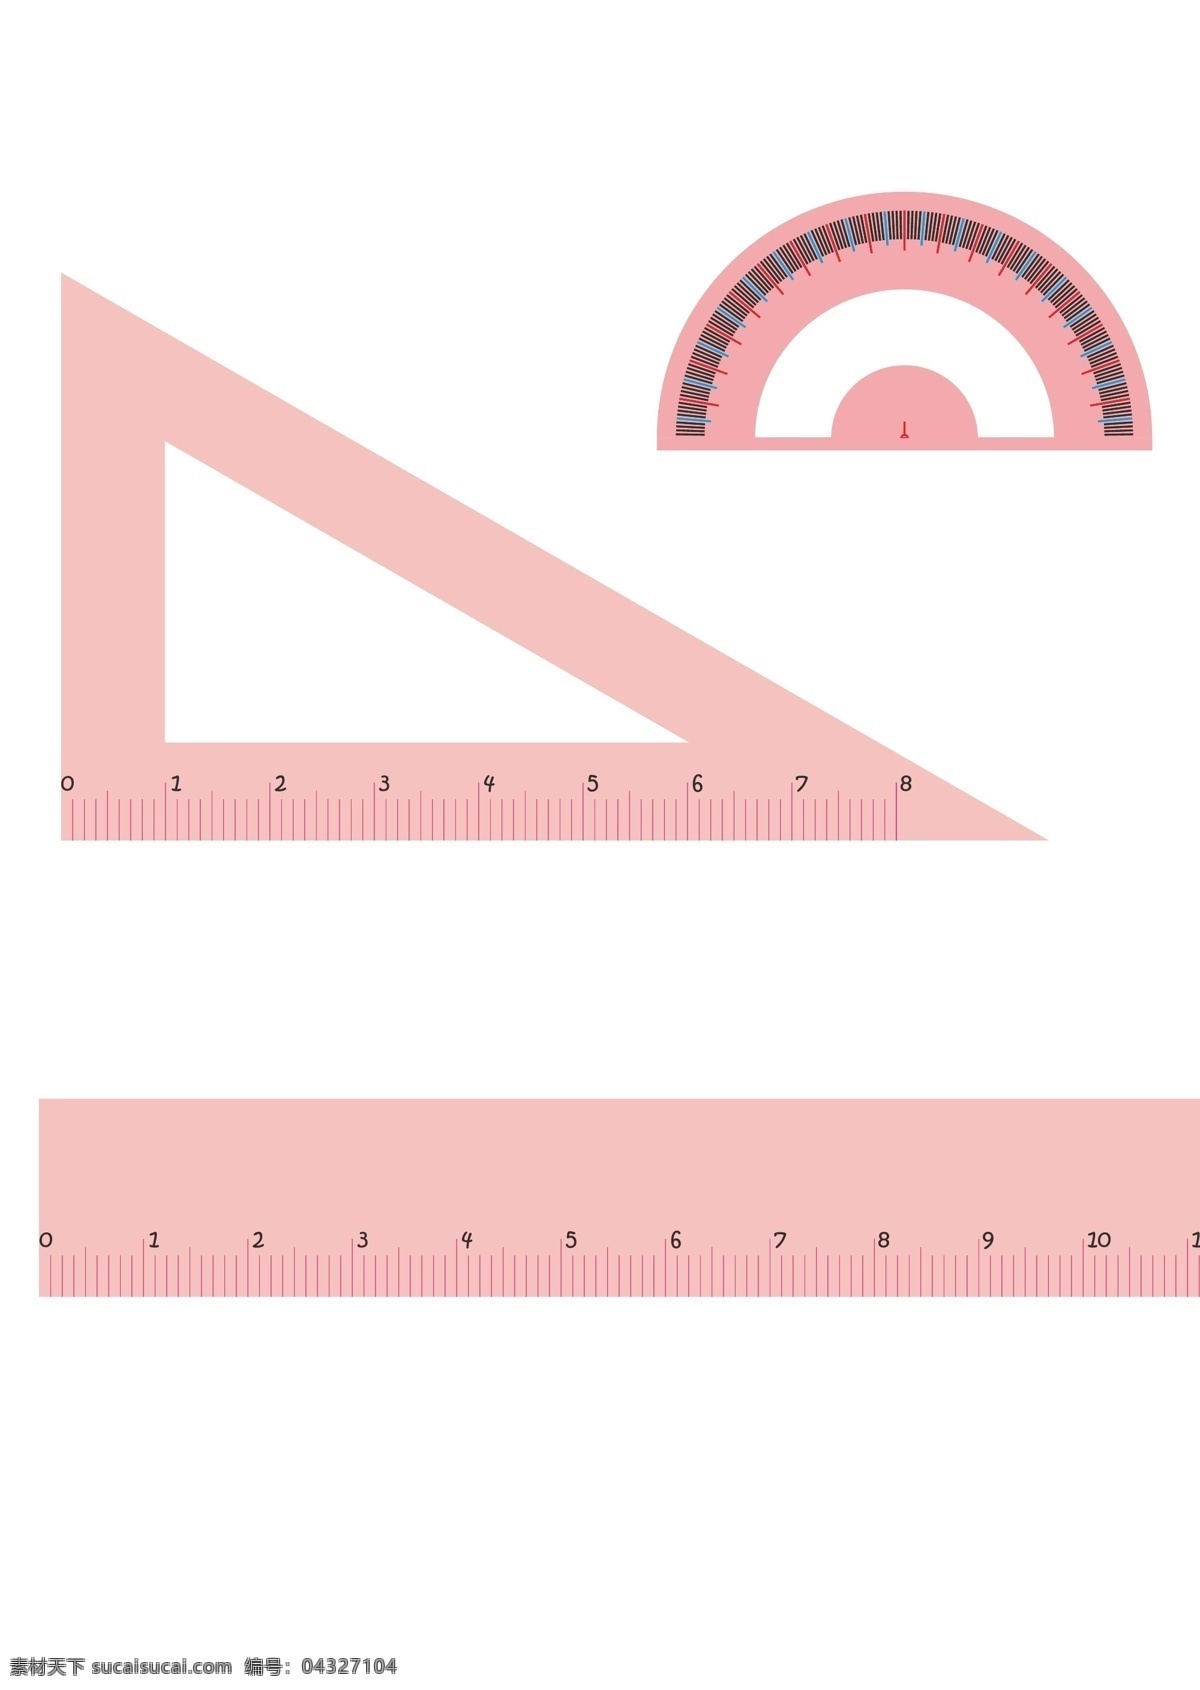 文具 粉红色 粉红 粉红量角器 粉红色量角器 无误差量角器 可爱量角器 三角尺 长尺 三角板 其他设计 矢量